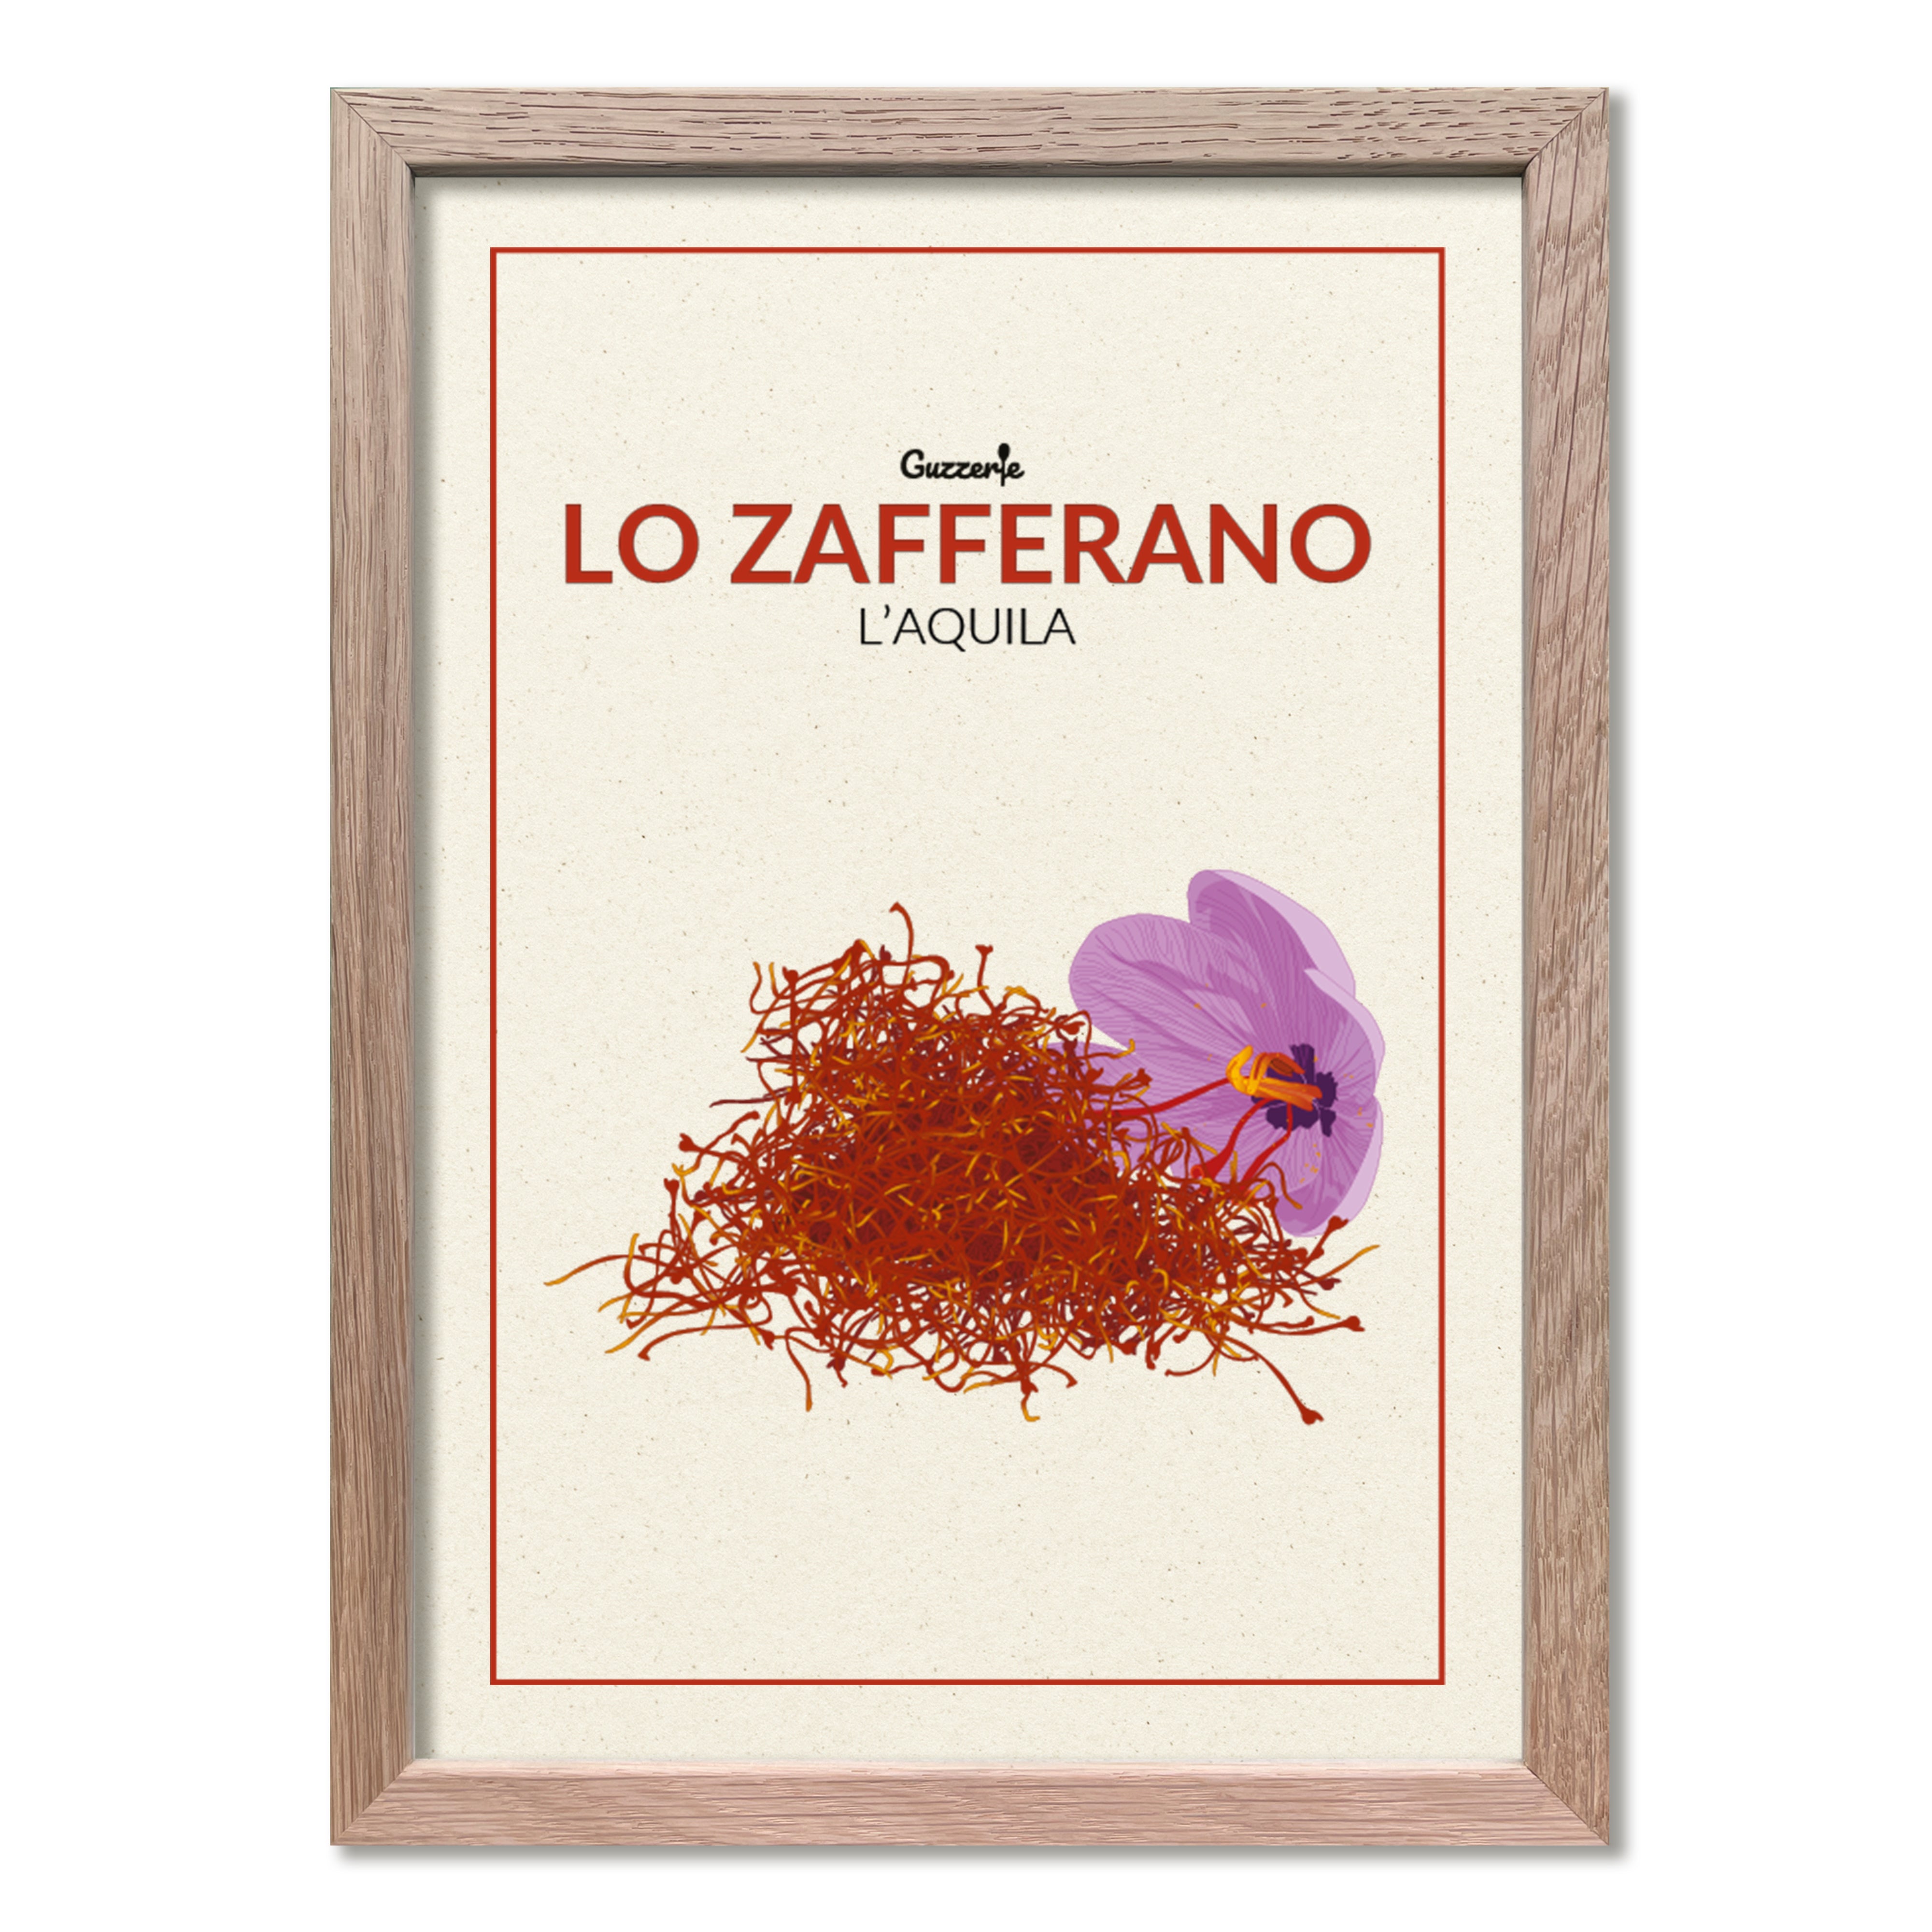 Poster of the Zafferano | Guzzerie